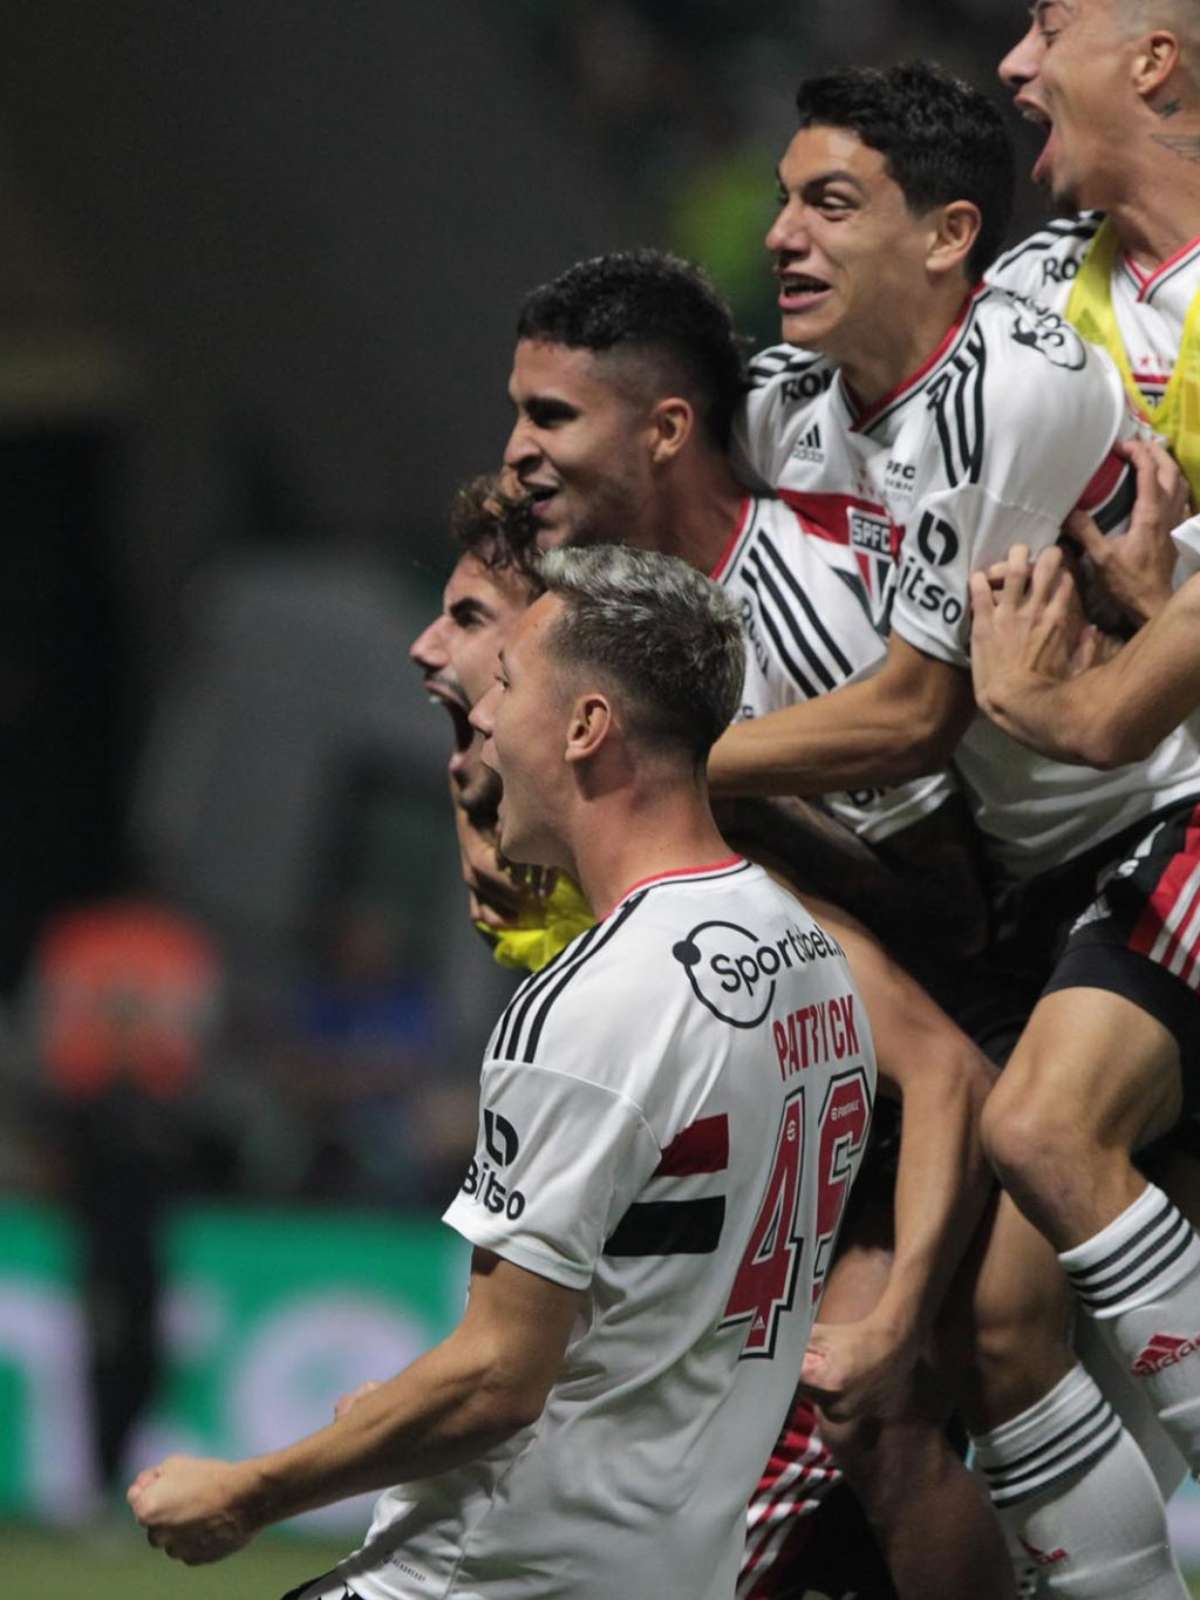 Paulista sorteado: Palmeiras em 'grupo da morte' e VAR em todas as fases